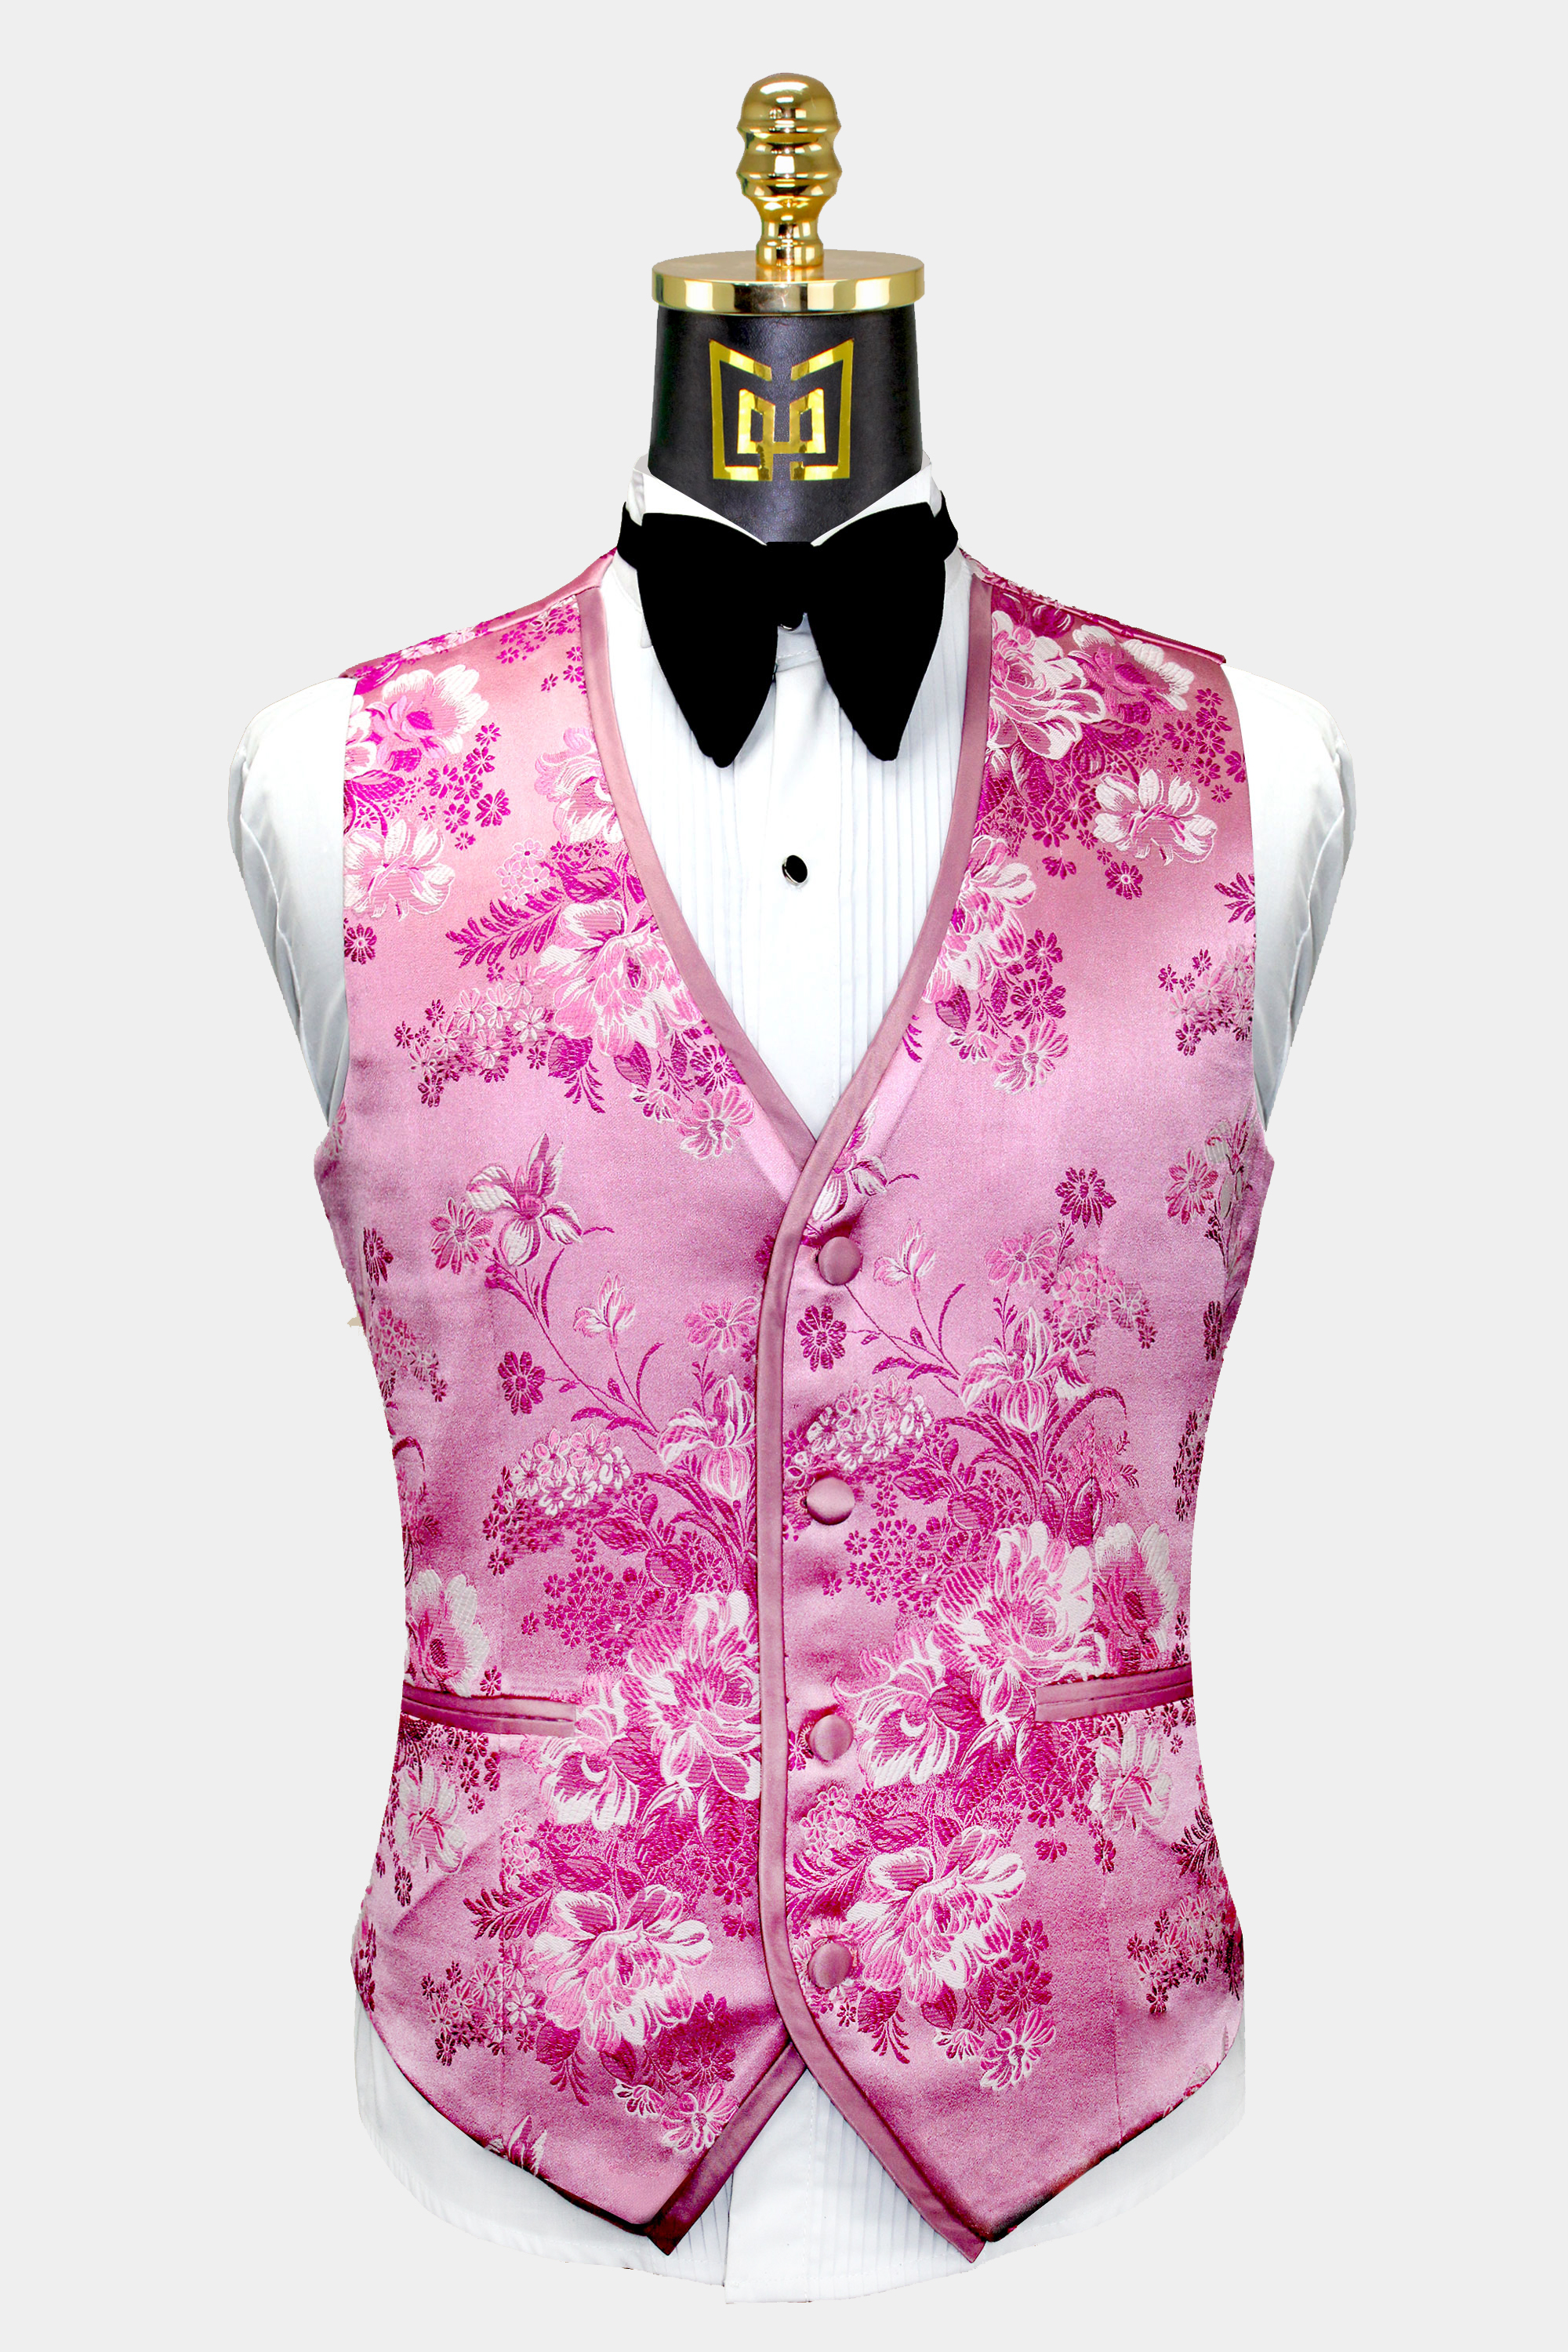 Rose-Pink-Tuxedo-Vest-Wedding-Waistcoat-from-Gentlemansguru.com